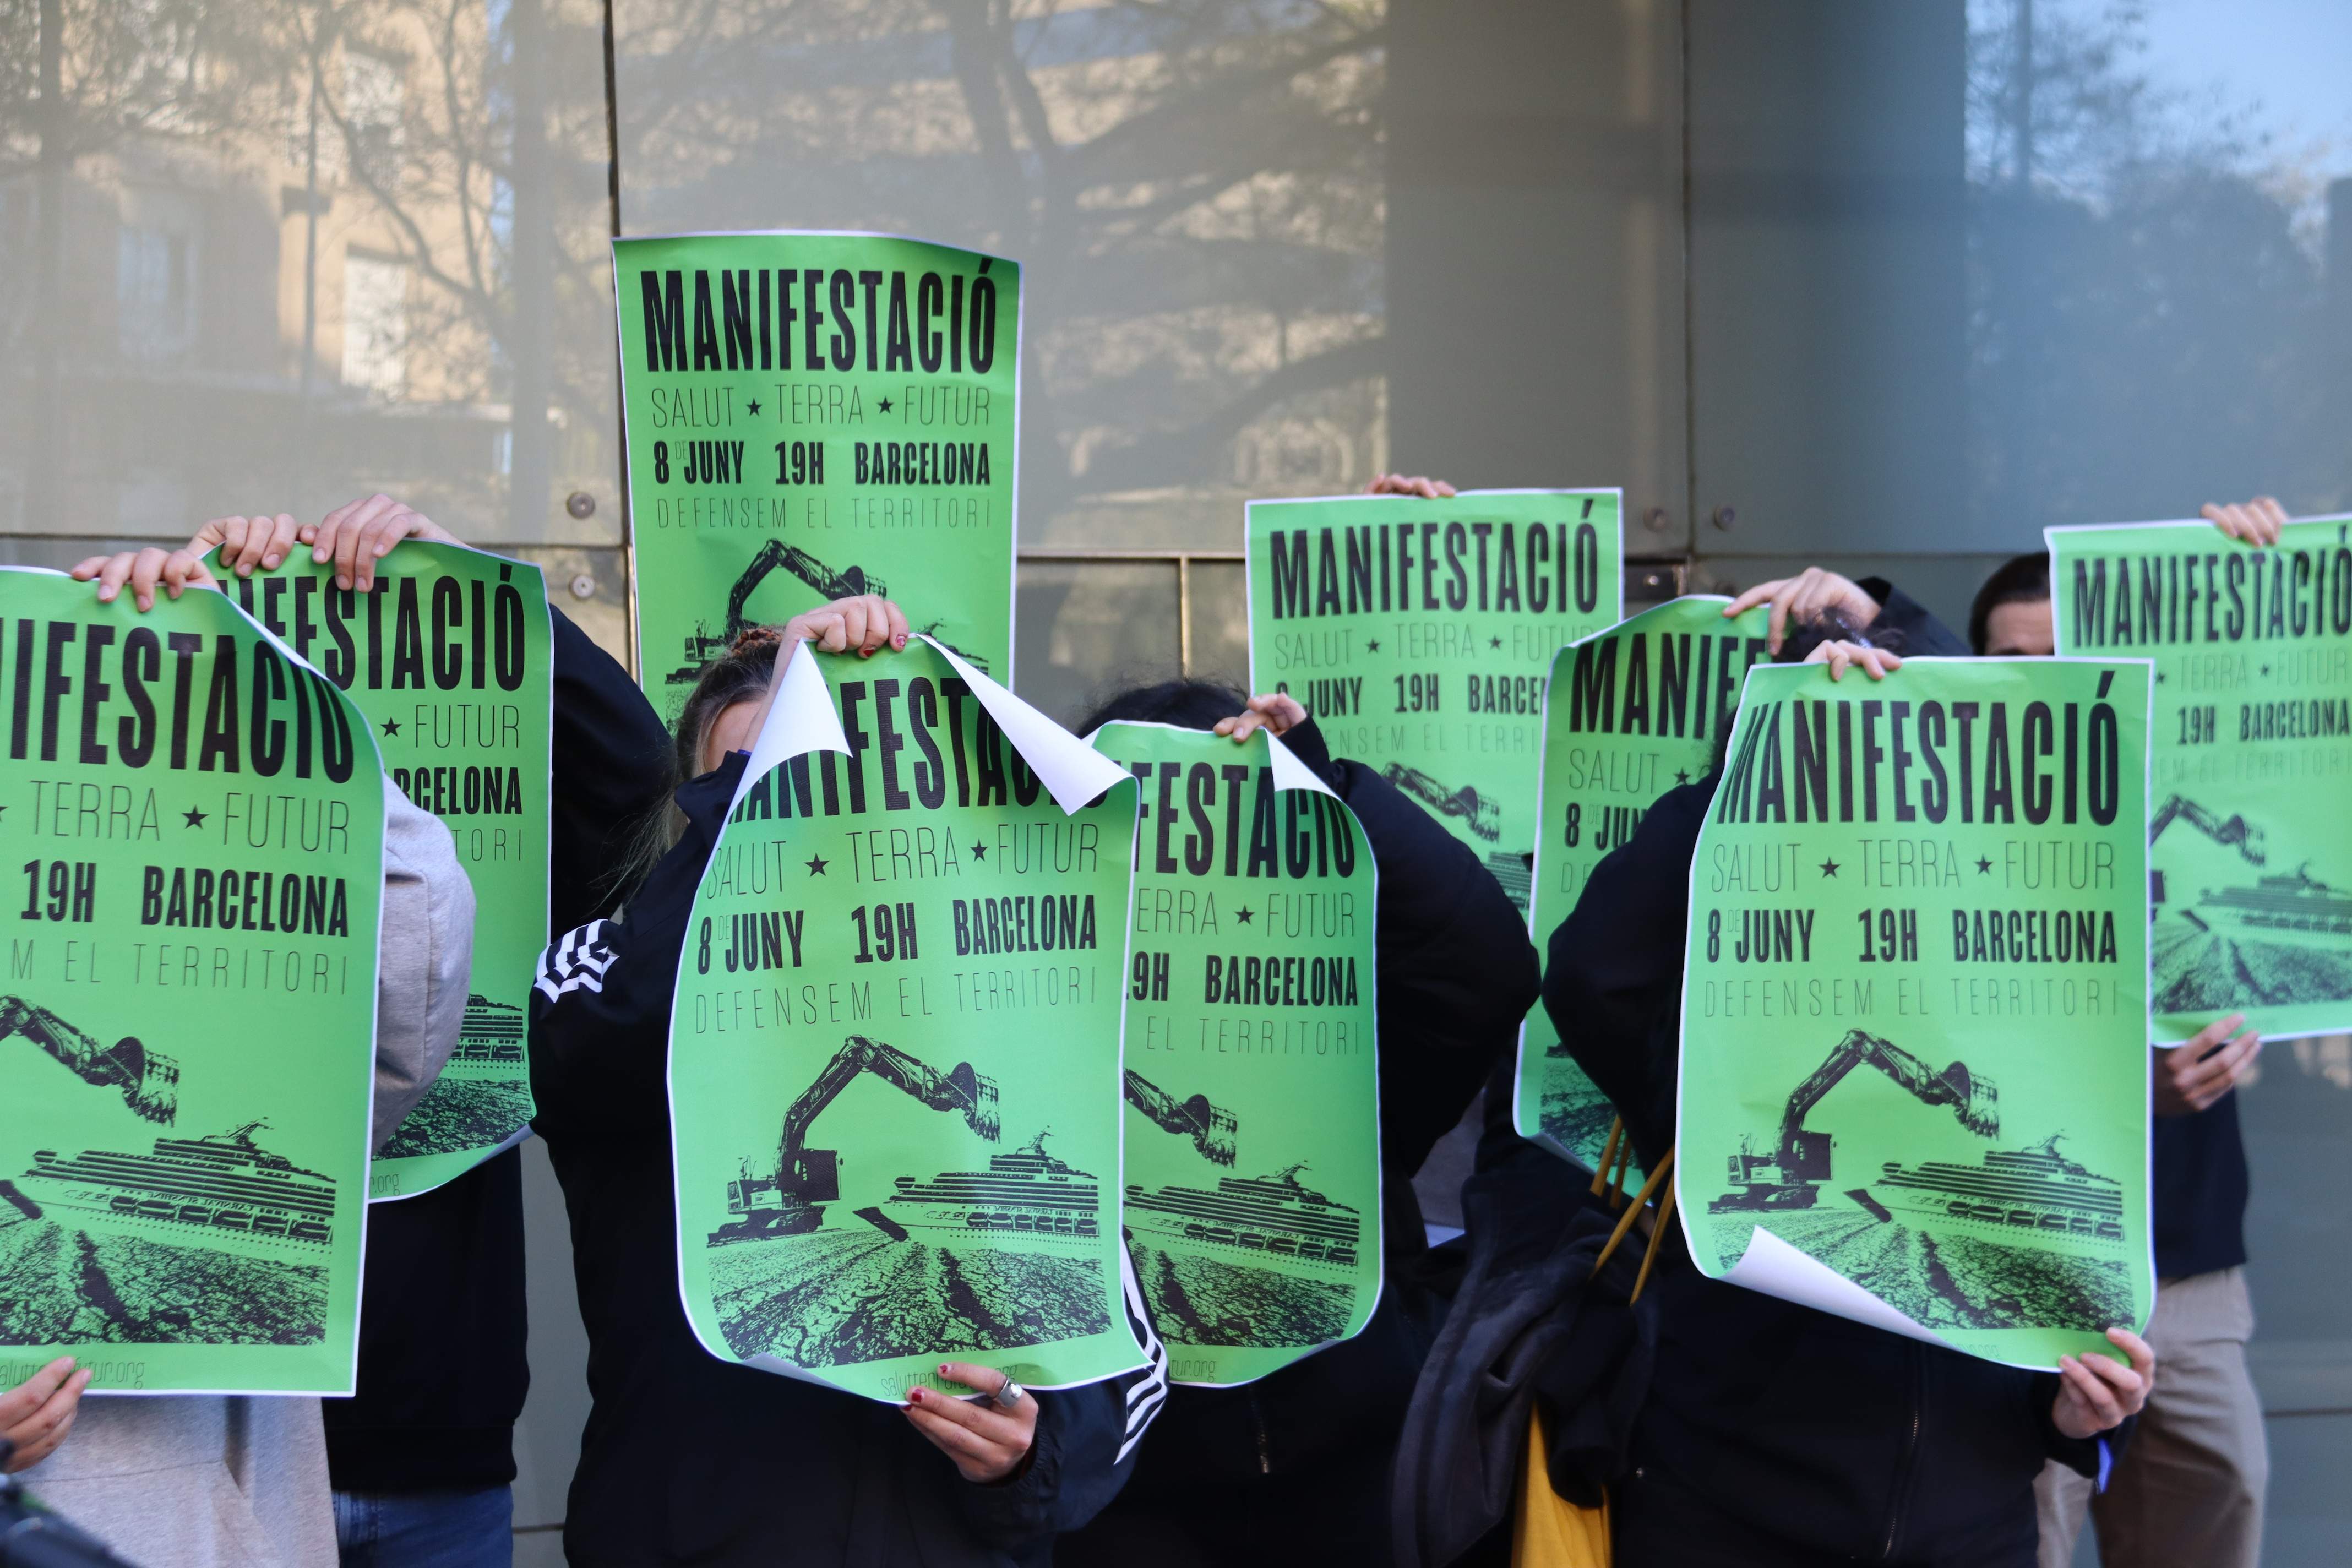 Manifestació ecologista el 8 de juny a Barcelona contra el turisme i els macroprojectes